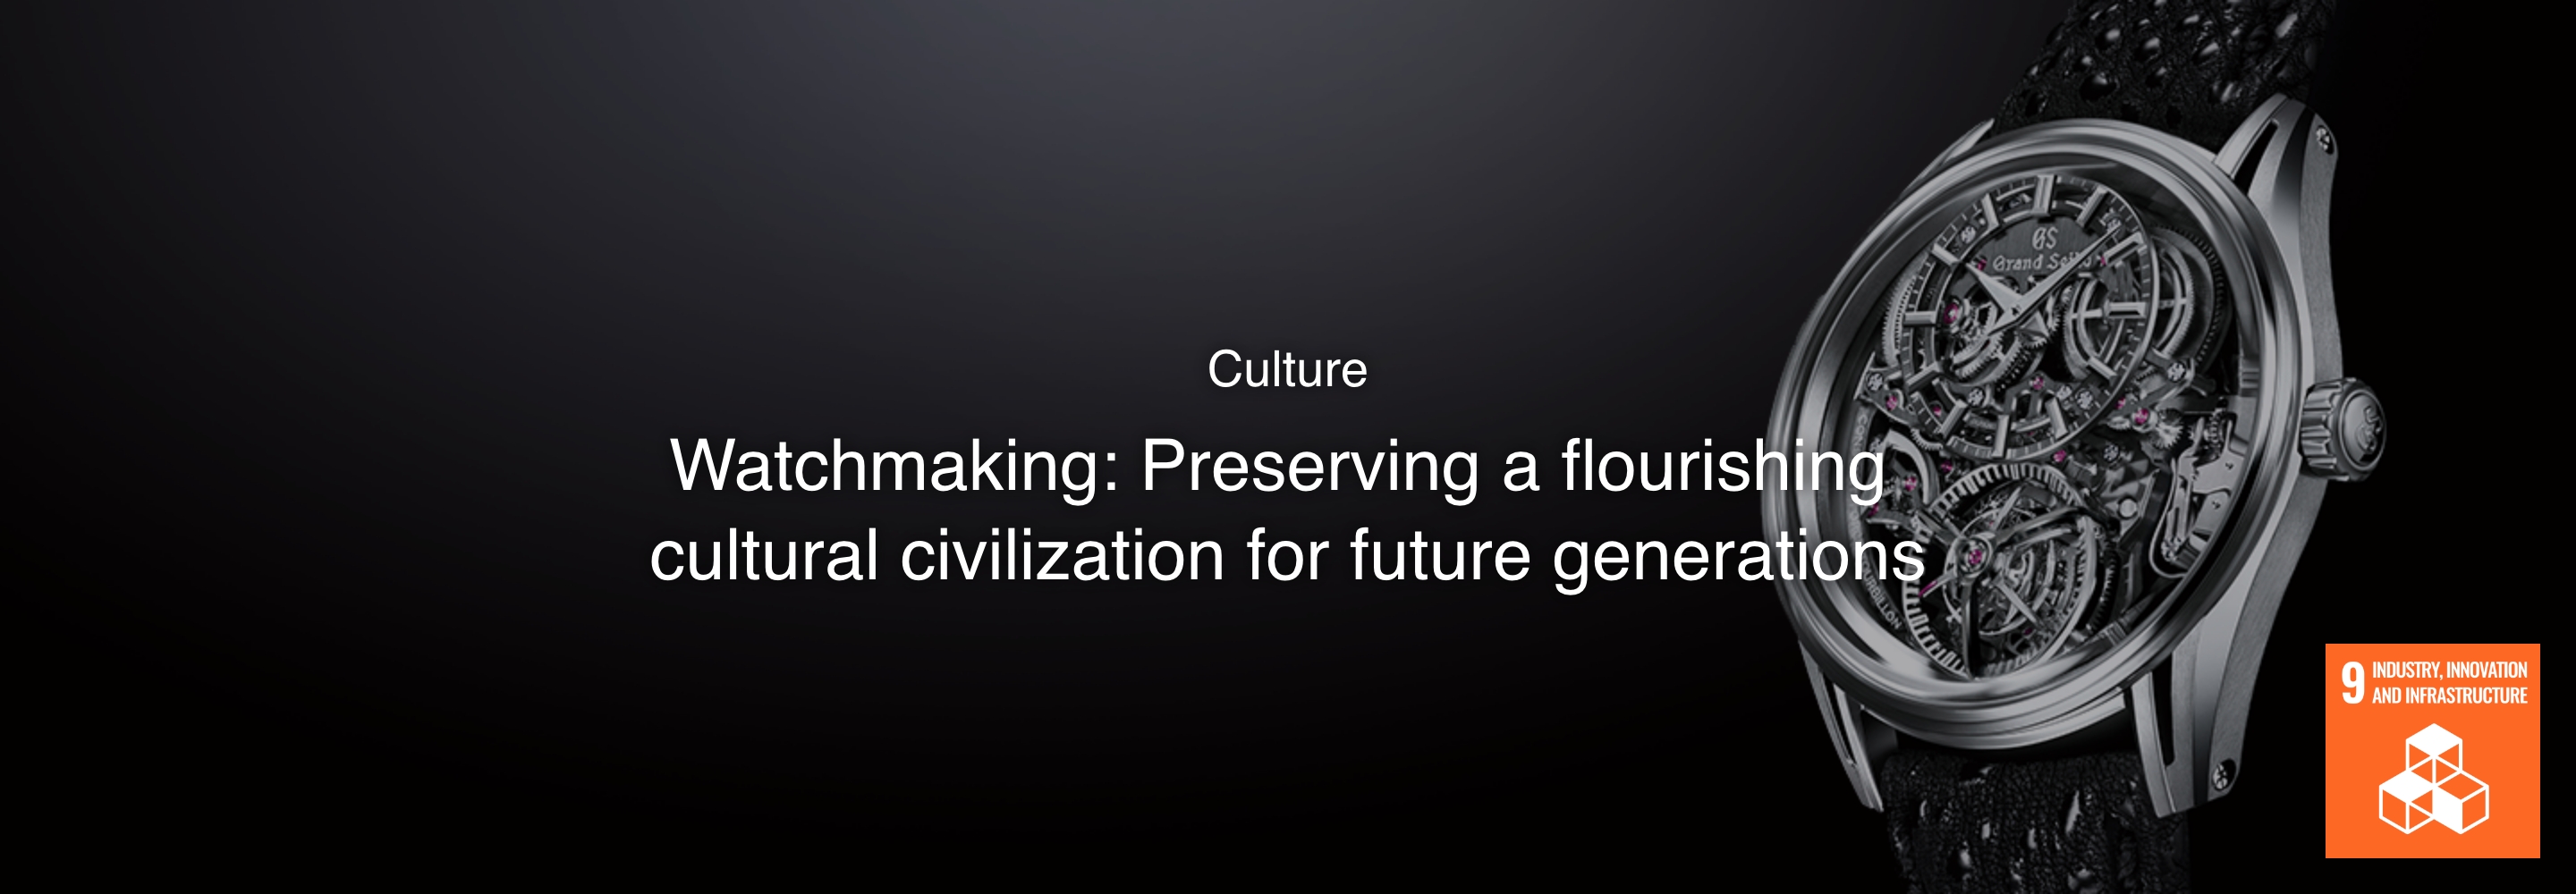 Cultura Produção relojoeira: Preservar uma civilização cultural pujante para as gerações futuras